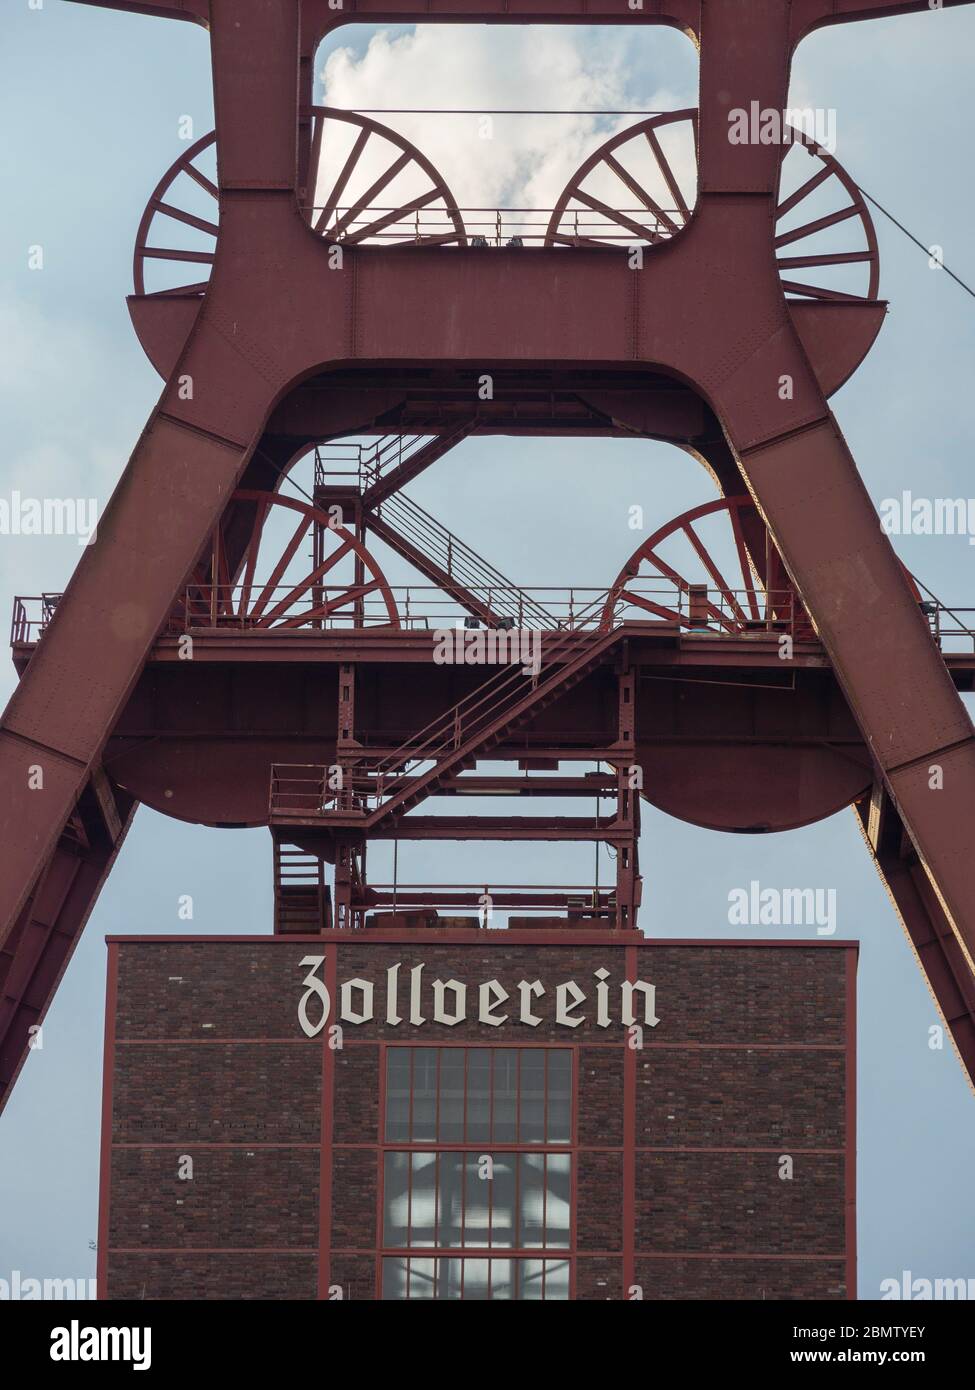 Zeche Zollverein, Förderturm Schacht XII, UNESCO Welterbe, Essen, Ruhrgebiet, NRW, Deutschland  Rechtl. Hinweis: Veröffentlichung für redaktionelle Zw Stock Photo